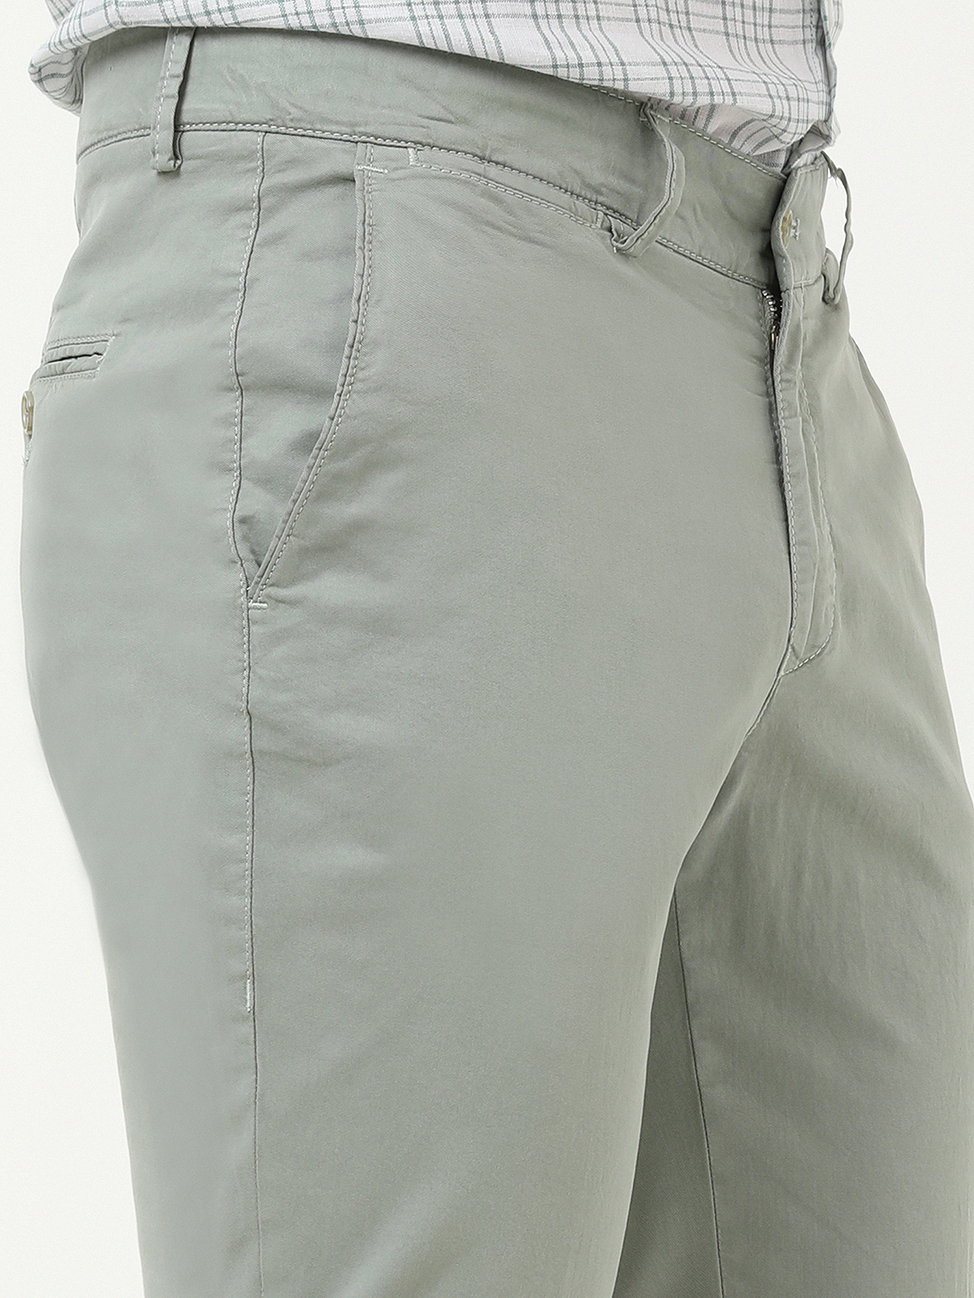 Nil Yeşili Dokuma Slim Fit Casual Pamuk Karışımlı Pantolon